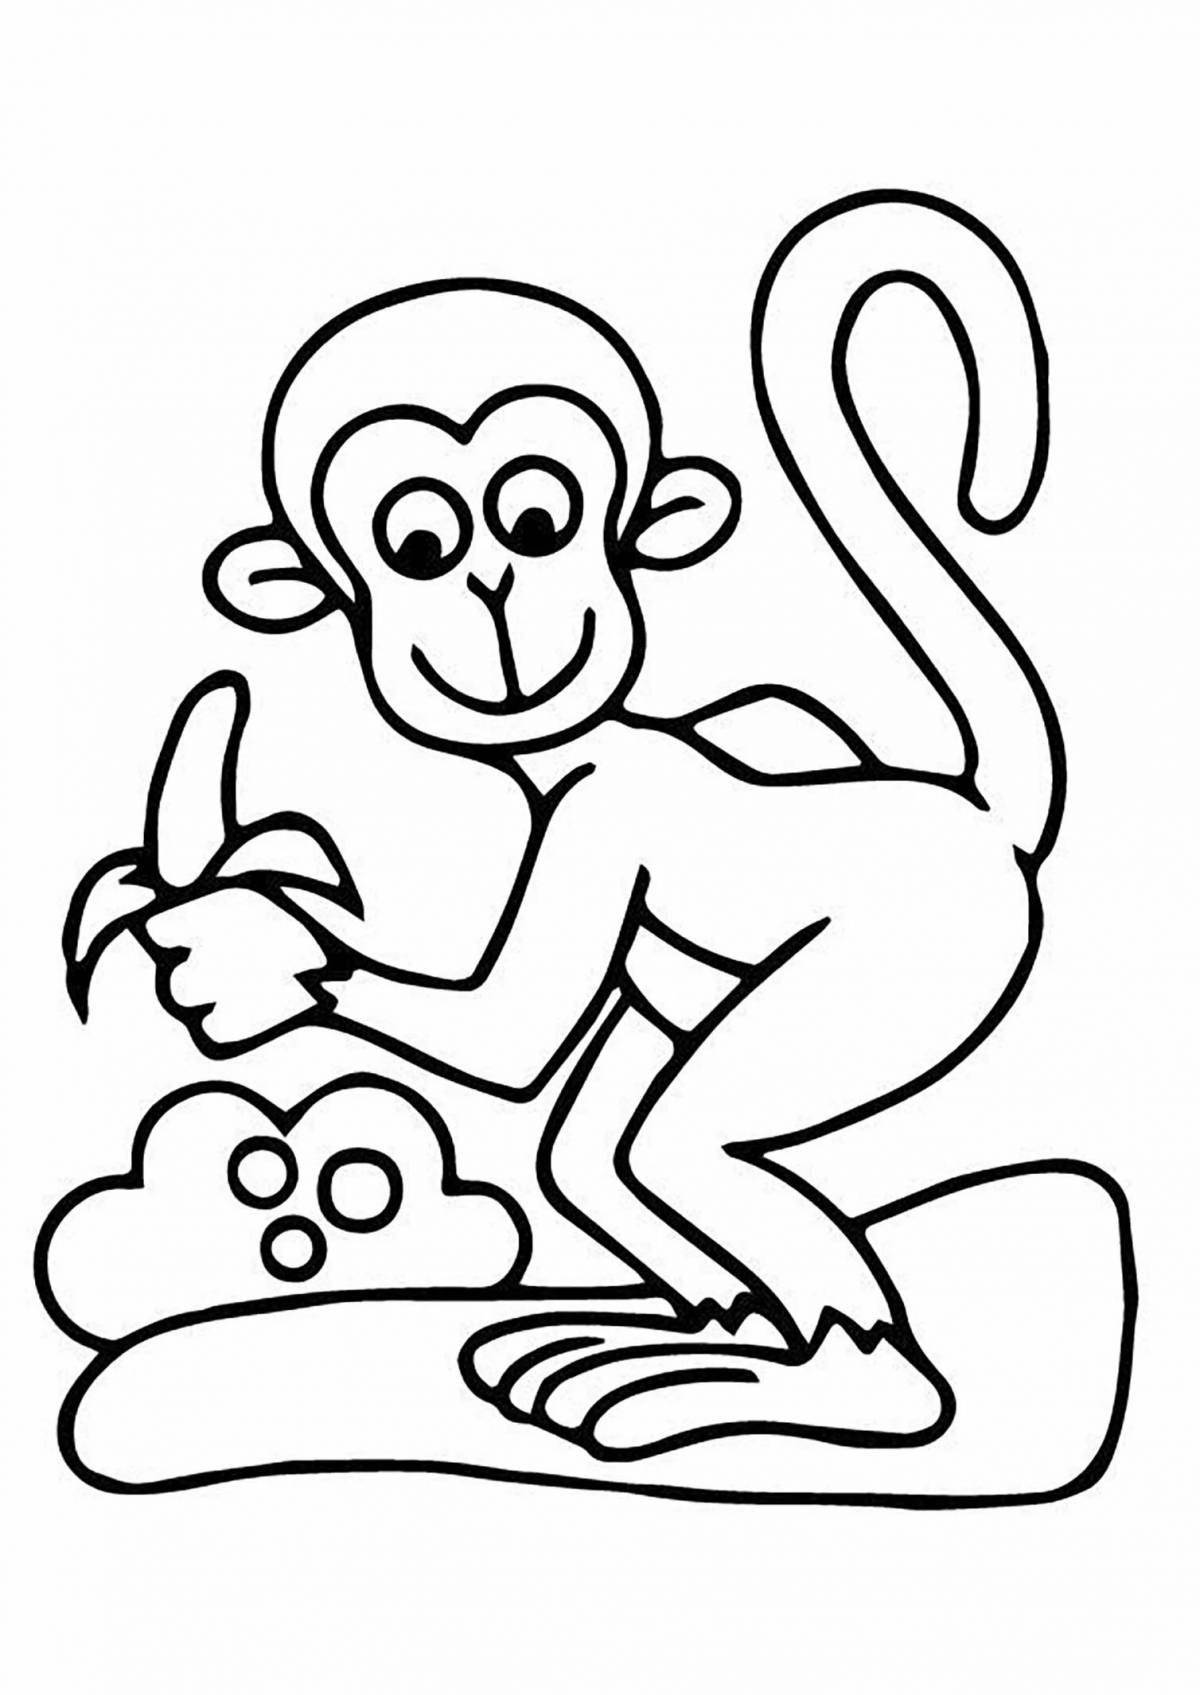 Красочная страница раскраски фигурки обезьяны